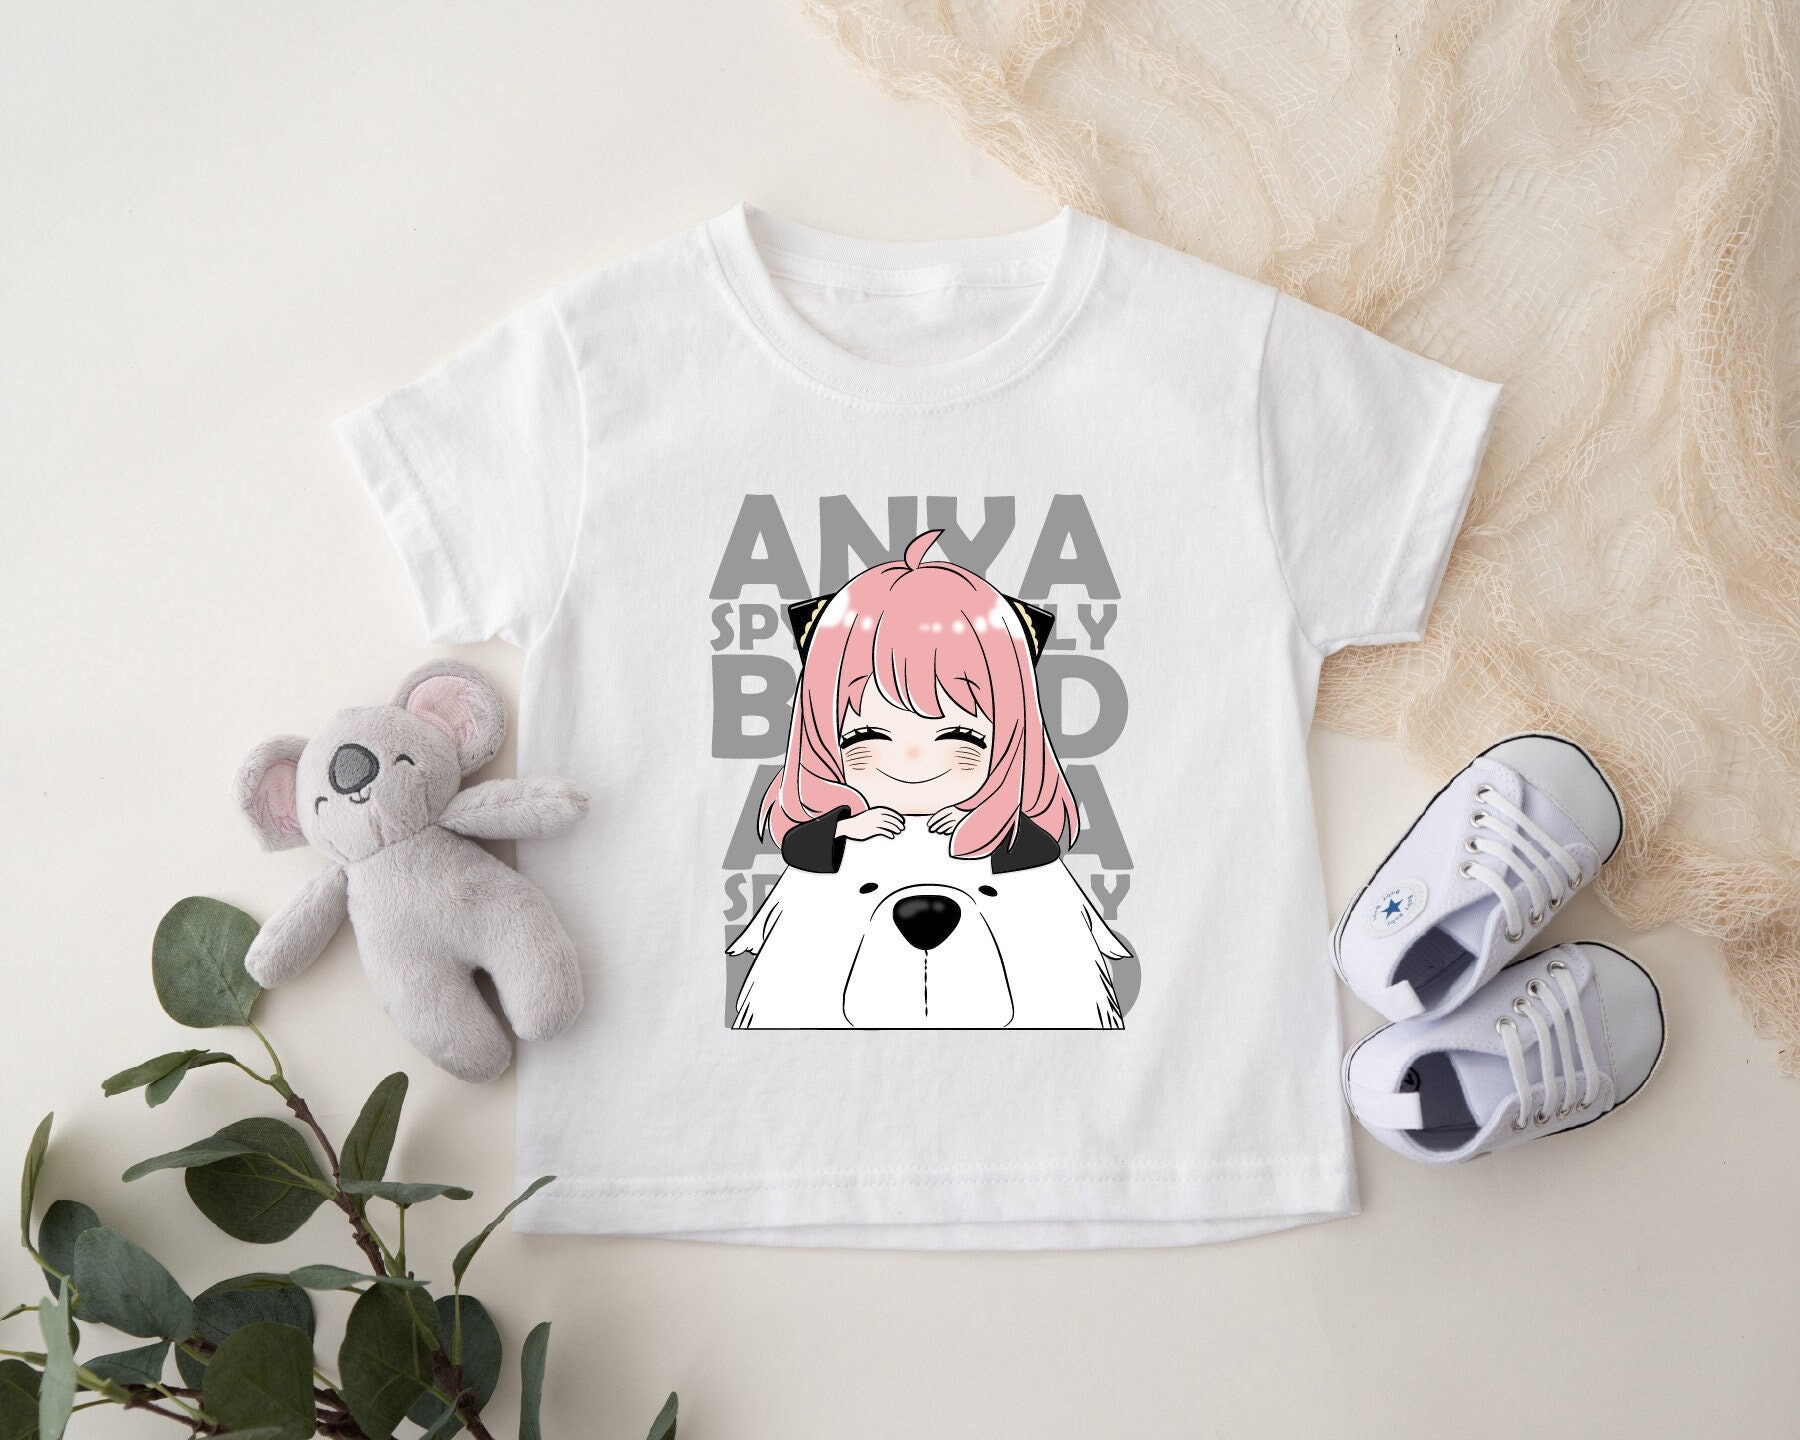 Cute Anya Meme Face Spy X Family Anime Unisex T-Shirt – Teepital